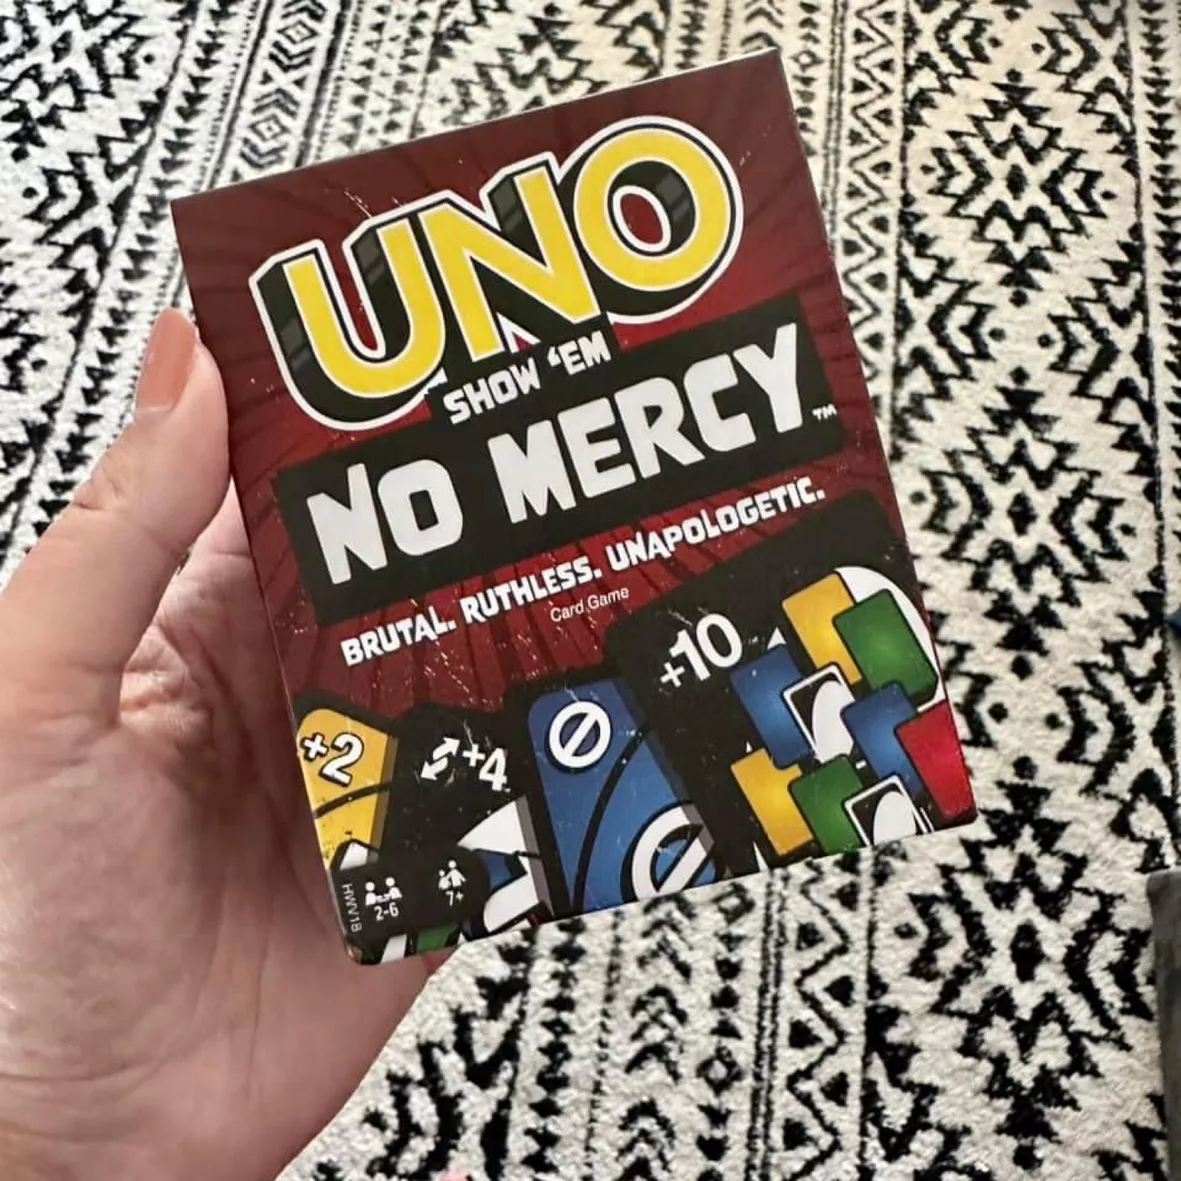 Uno No mercy Highlights 